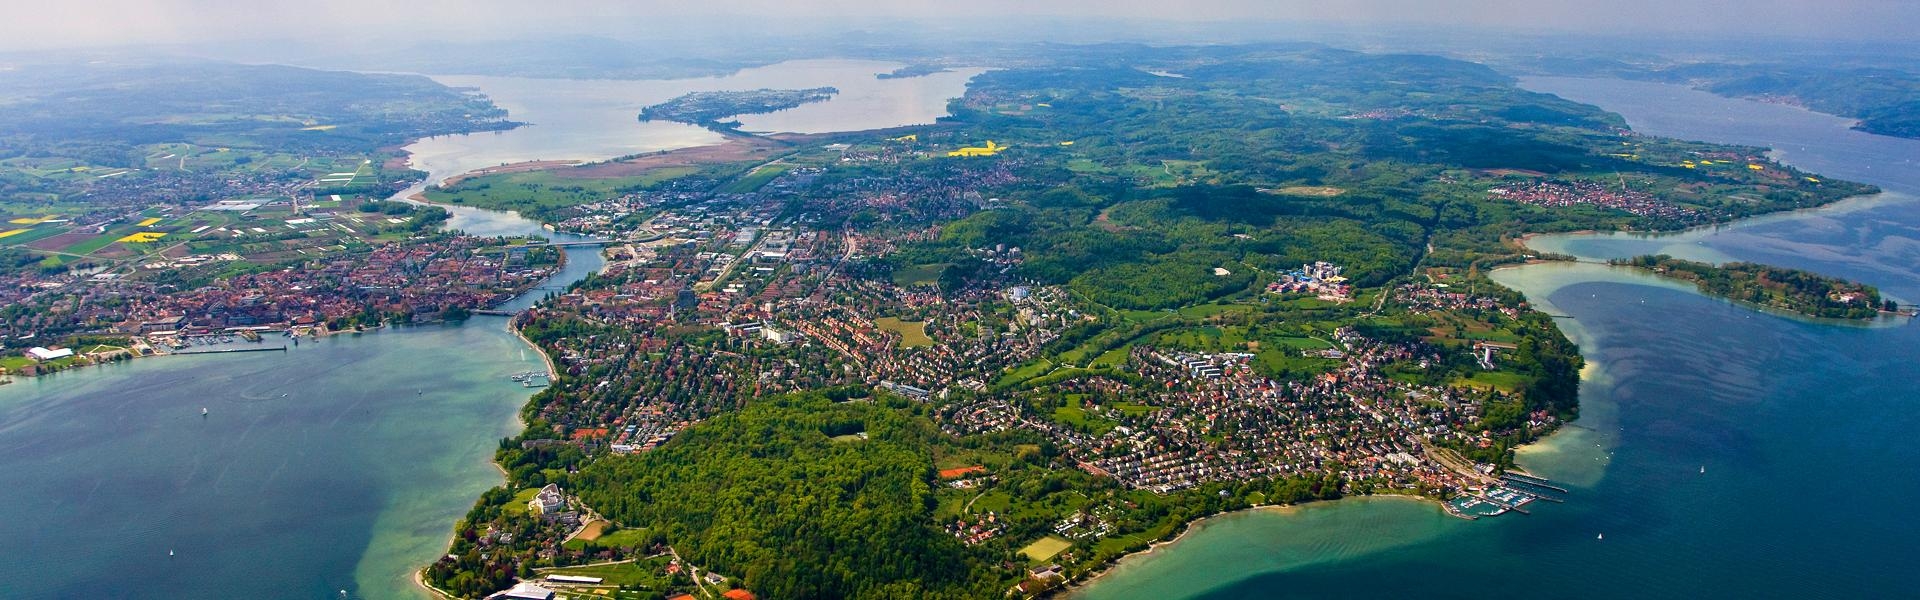 Luftaufnahme des Landkreises Konstanz vom Hörnle aus